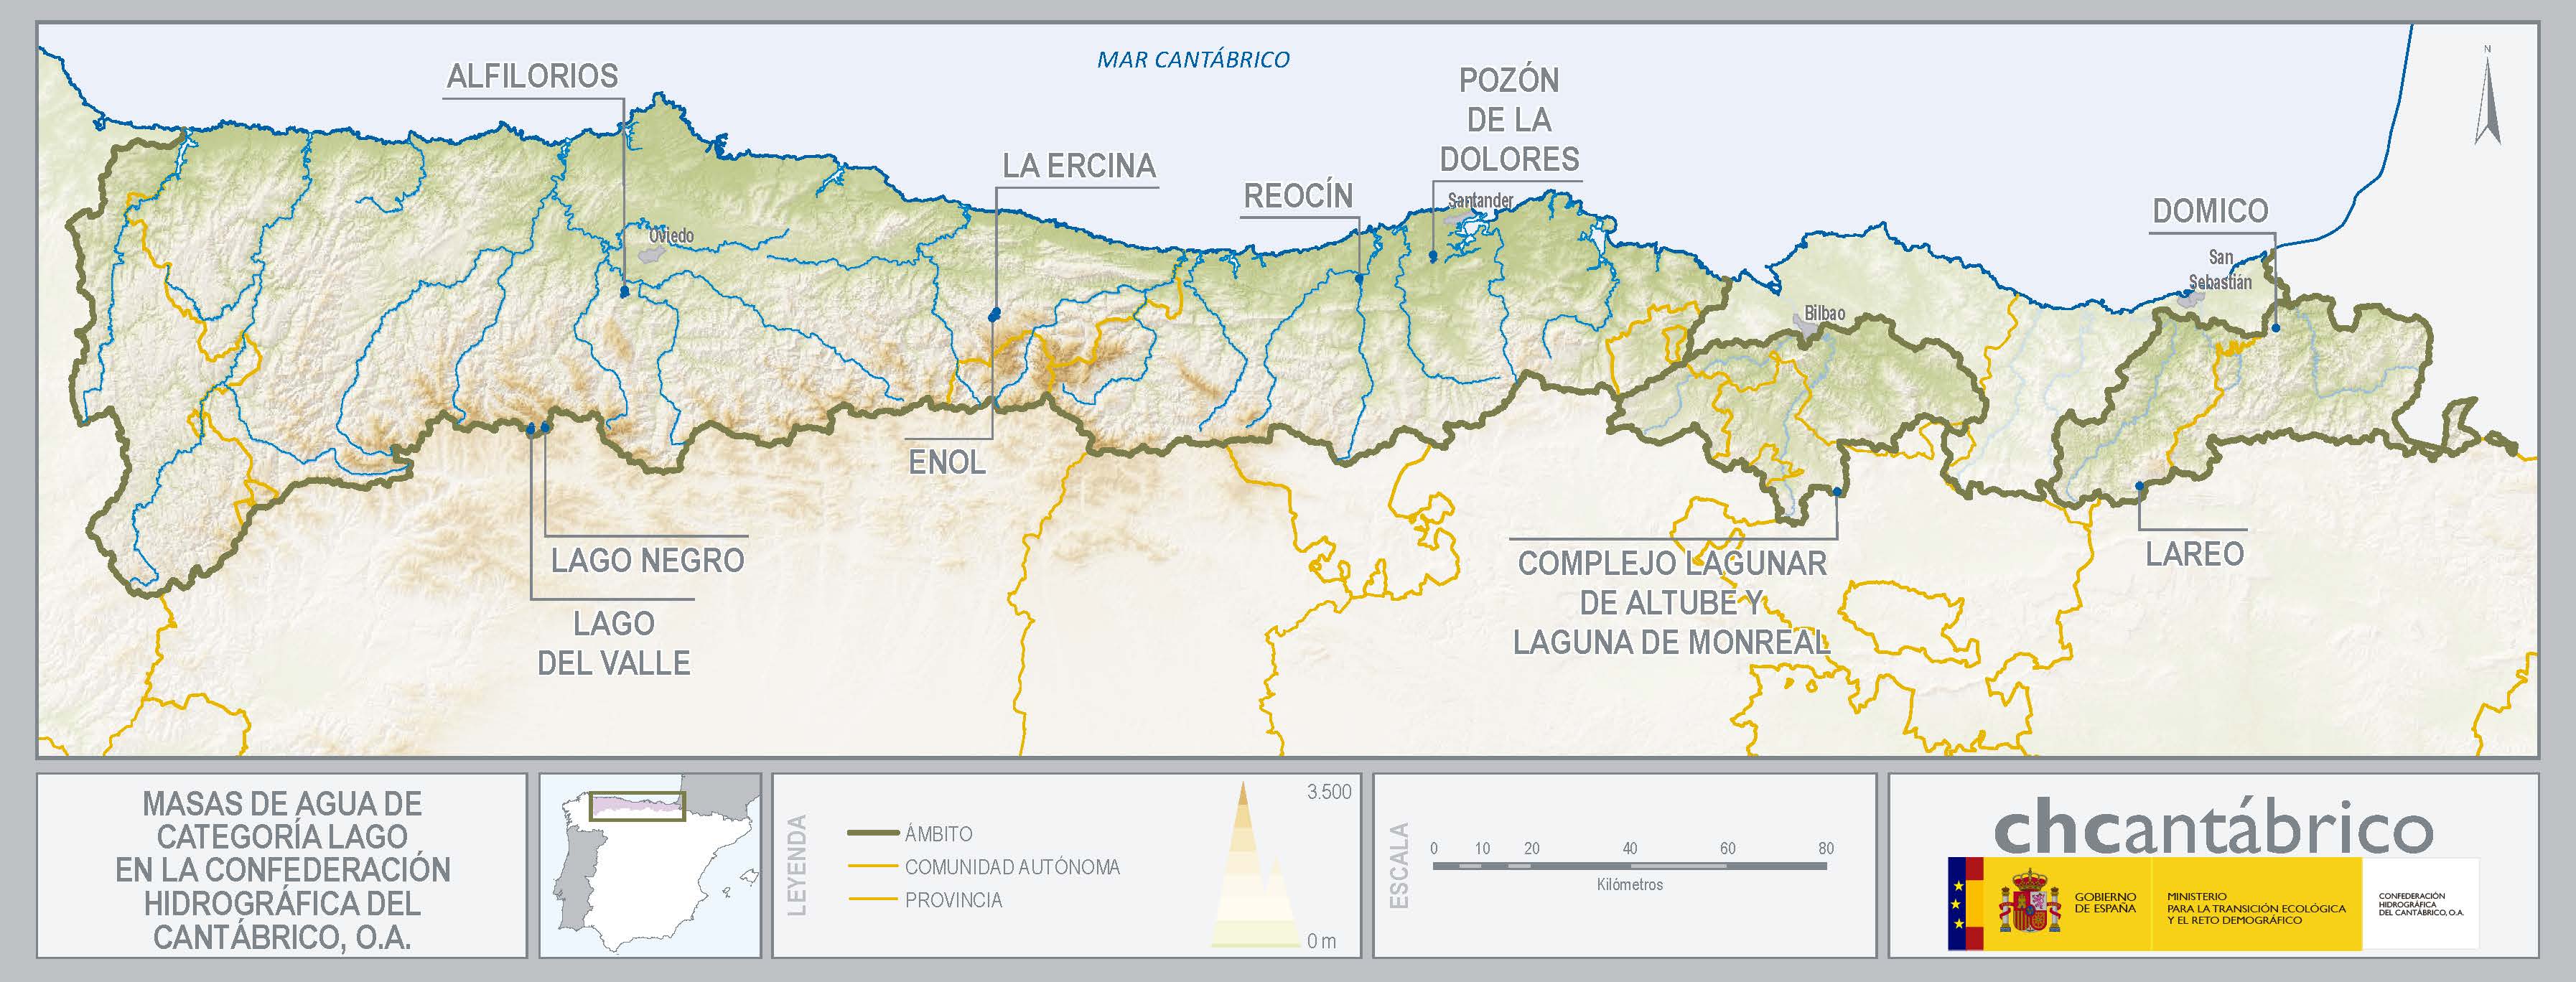 Mapa de masas de agua de categoría lago en la confederación hidrográfica del cantábrico, O.A.